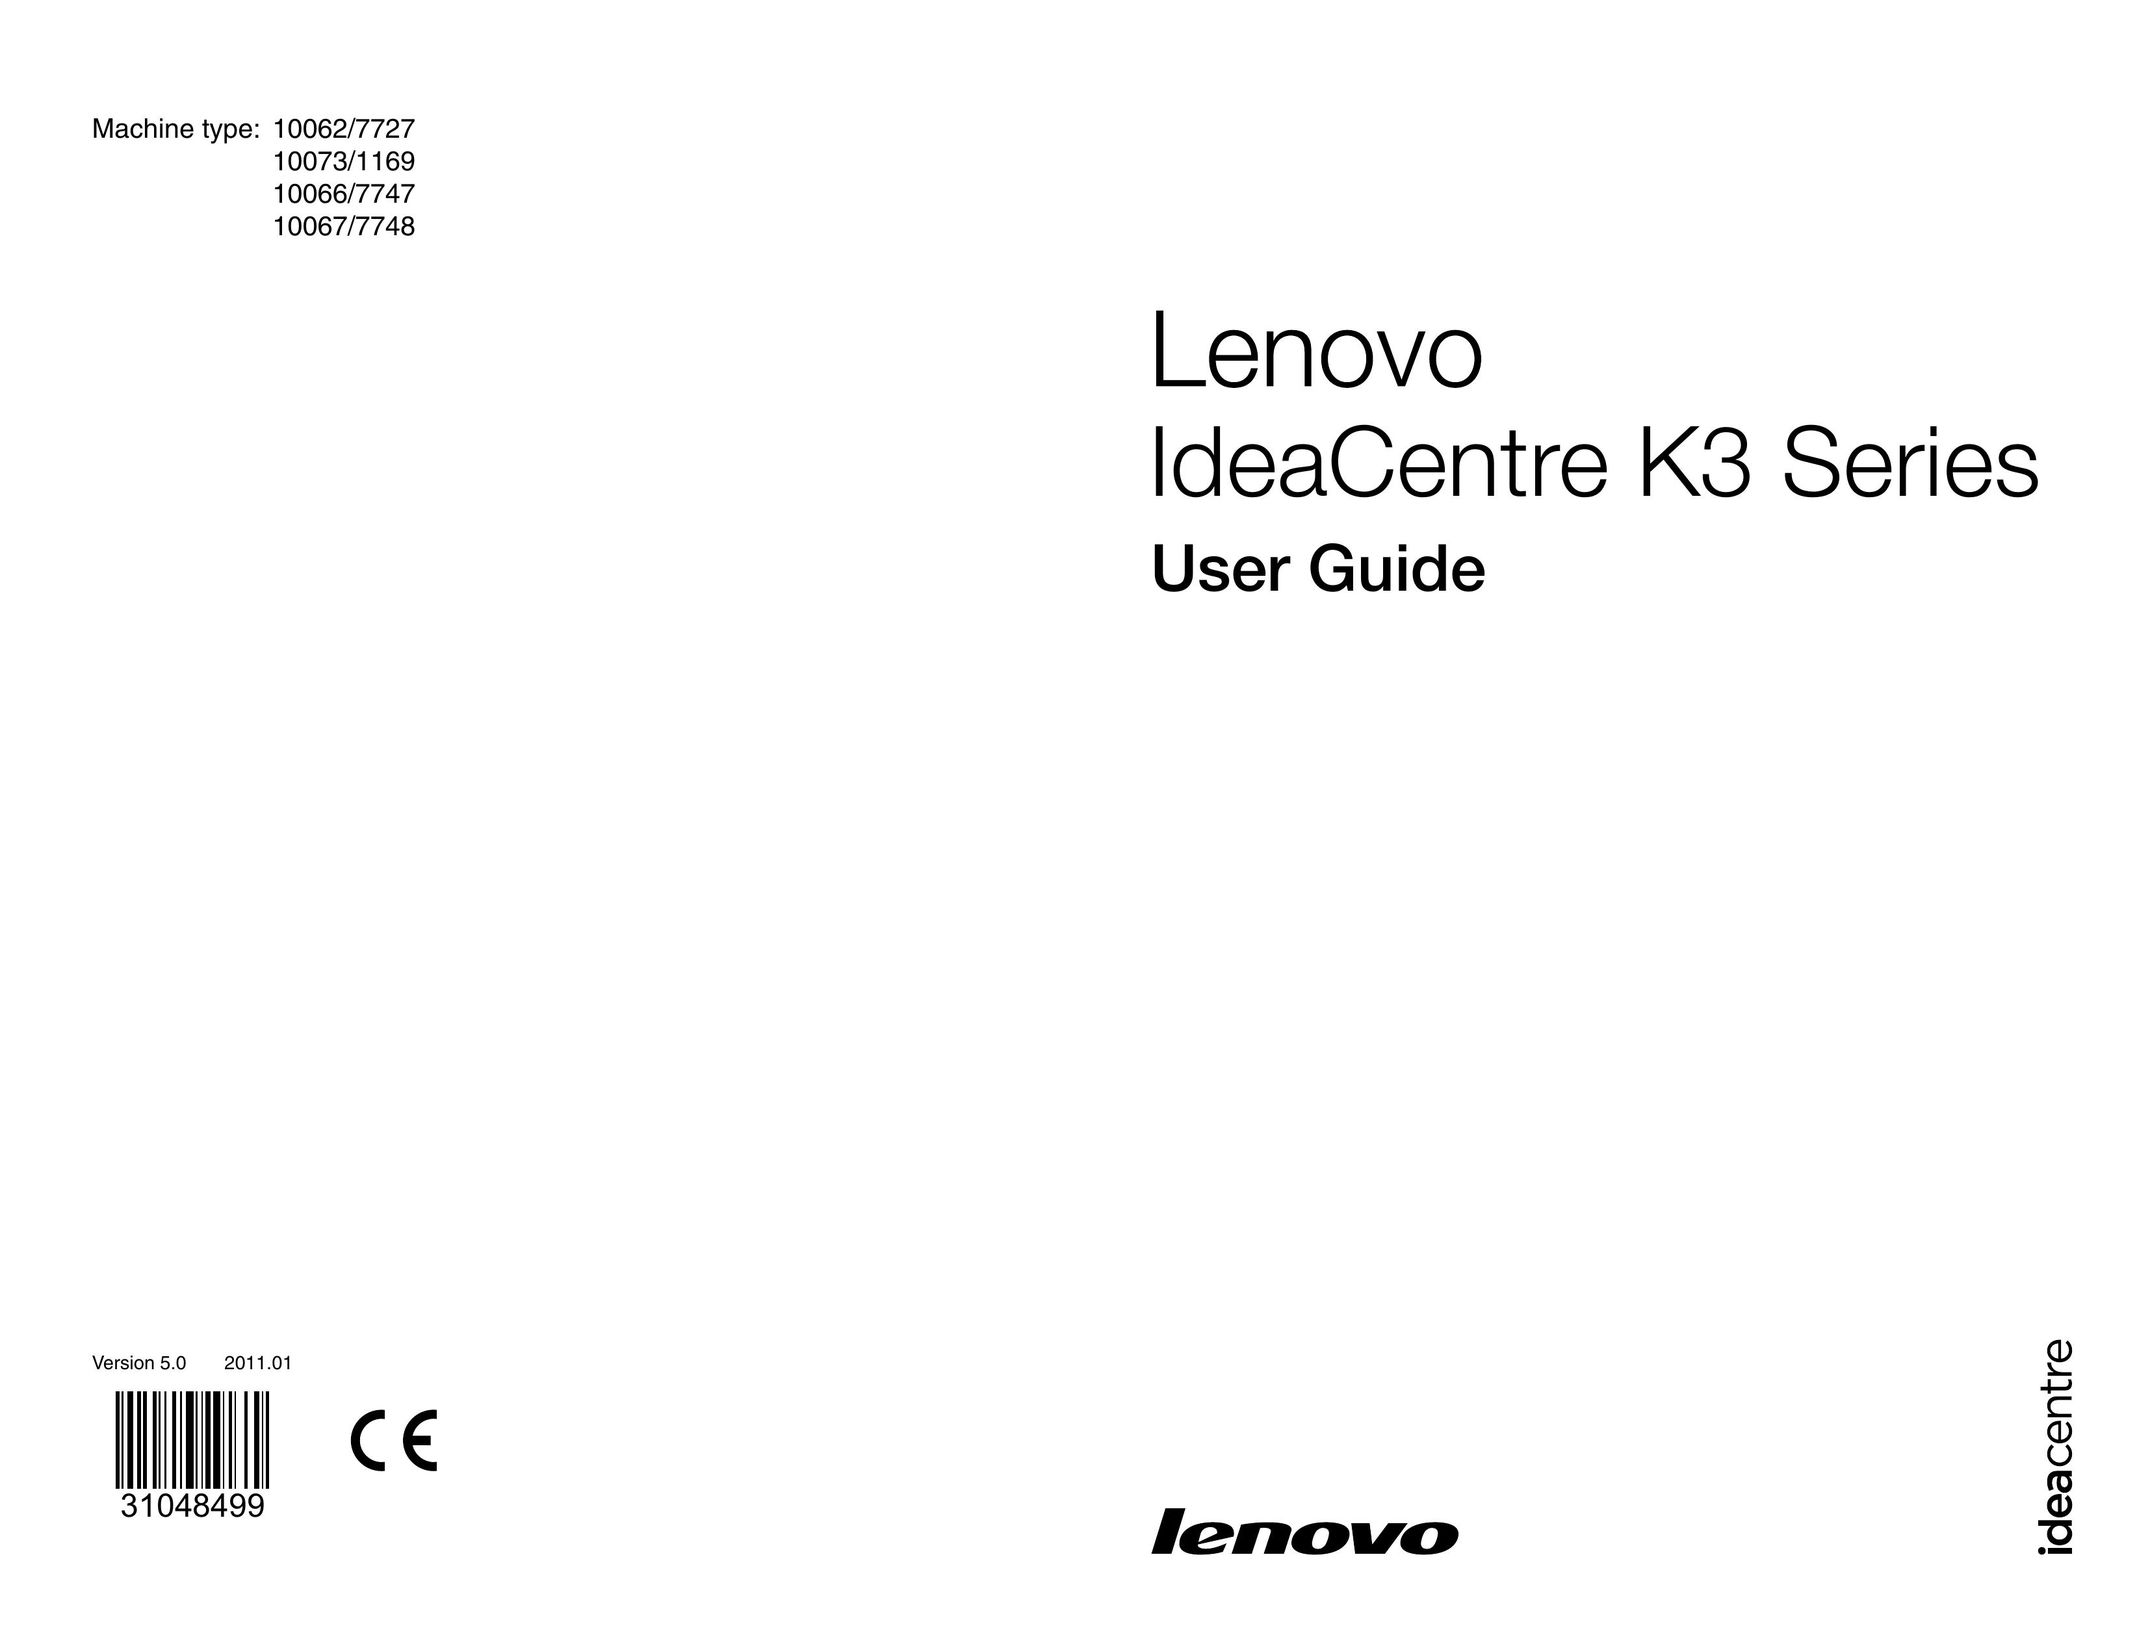 Lenovo 10067/7748 Tablet User Manual